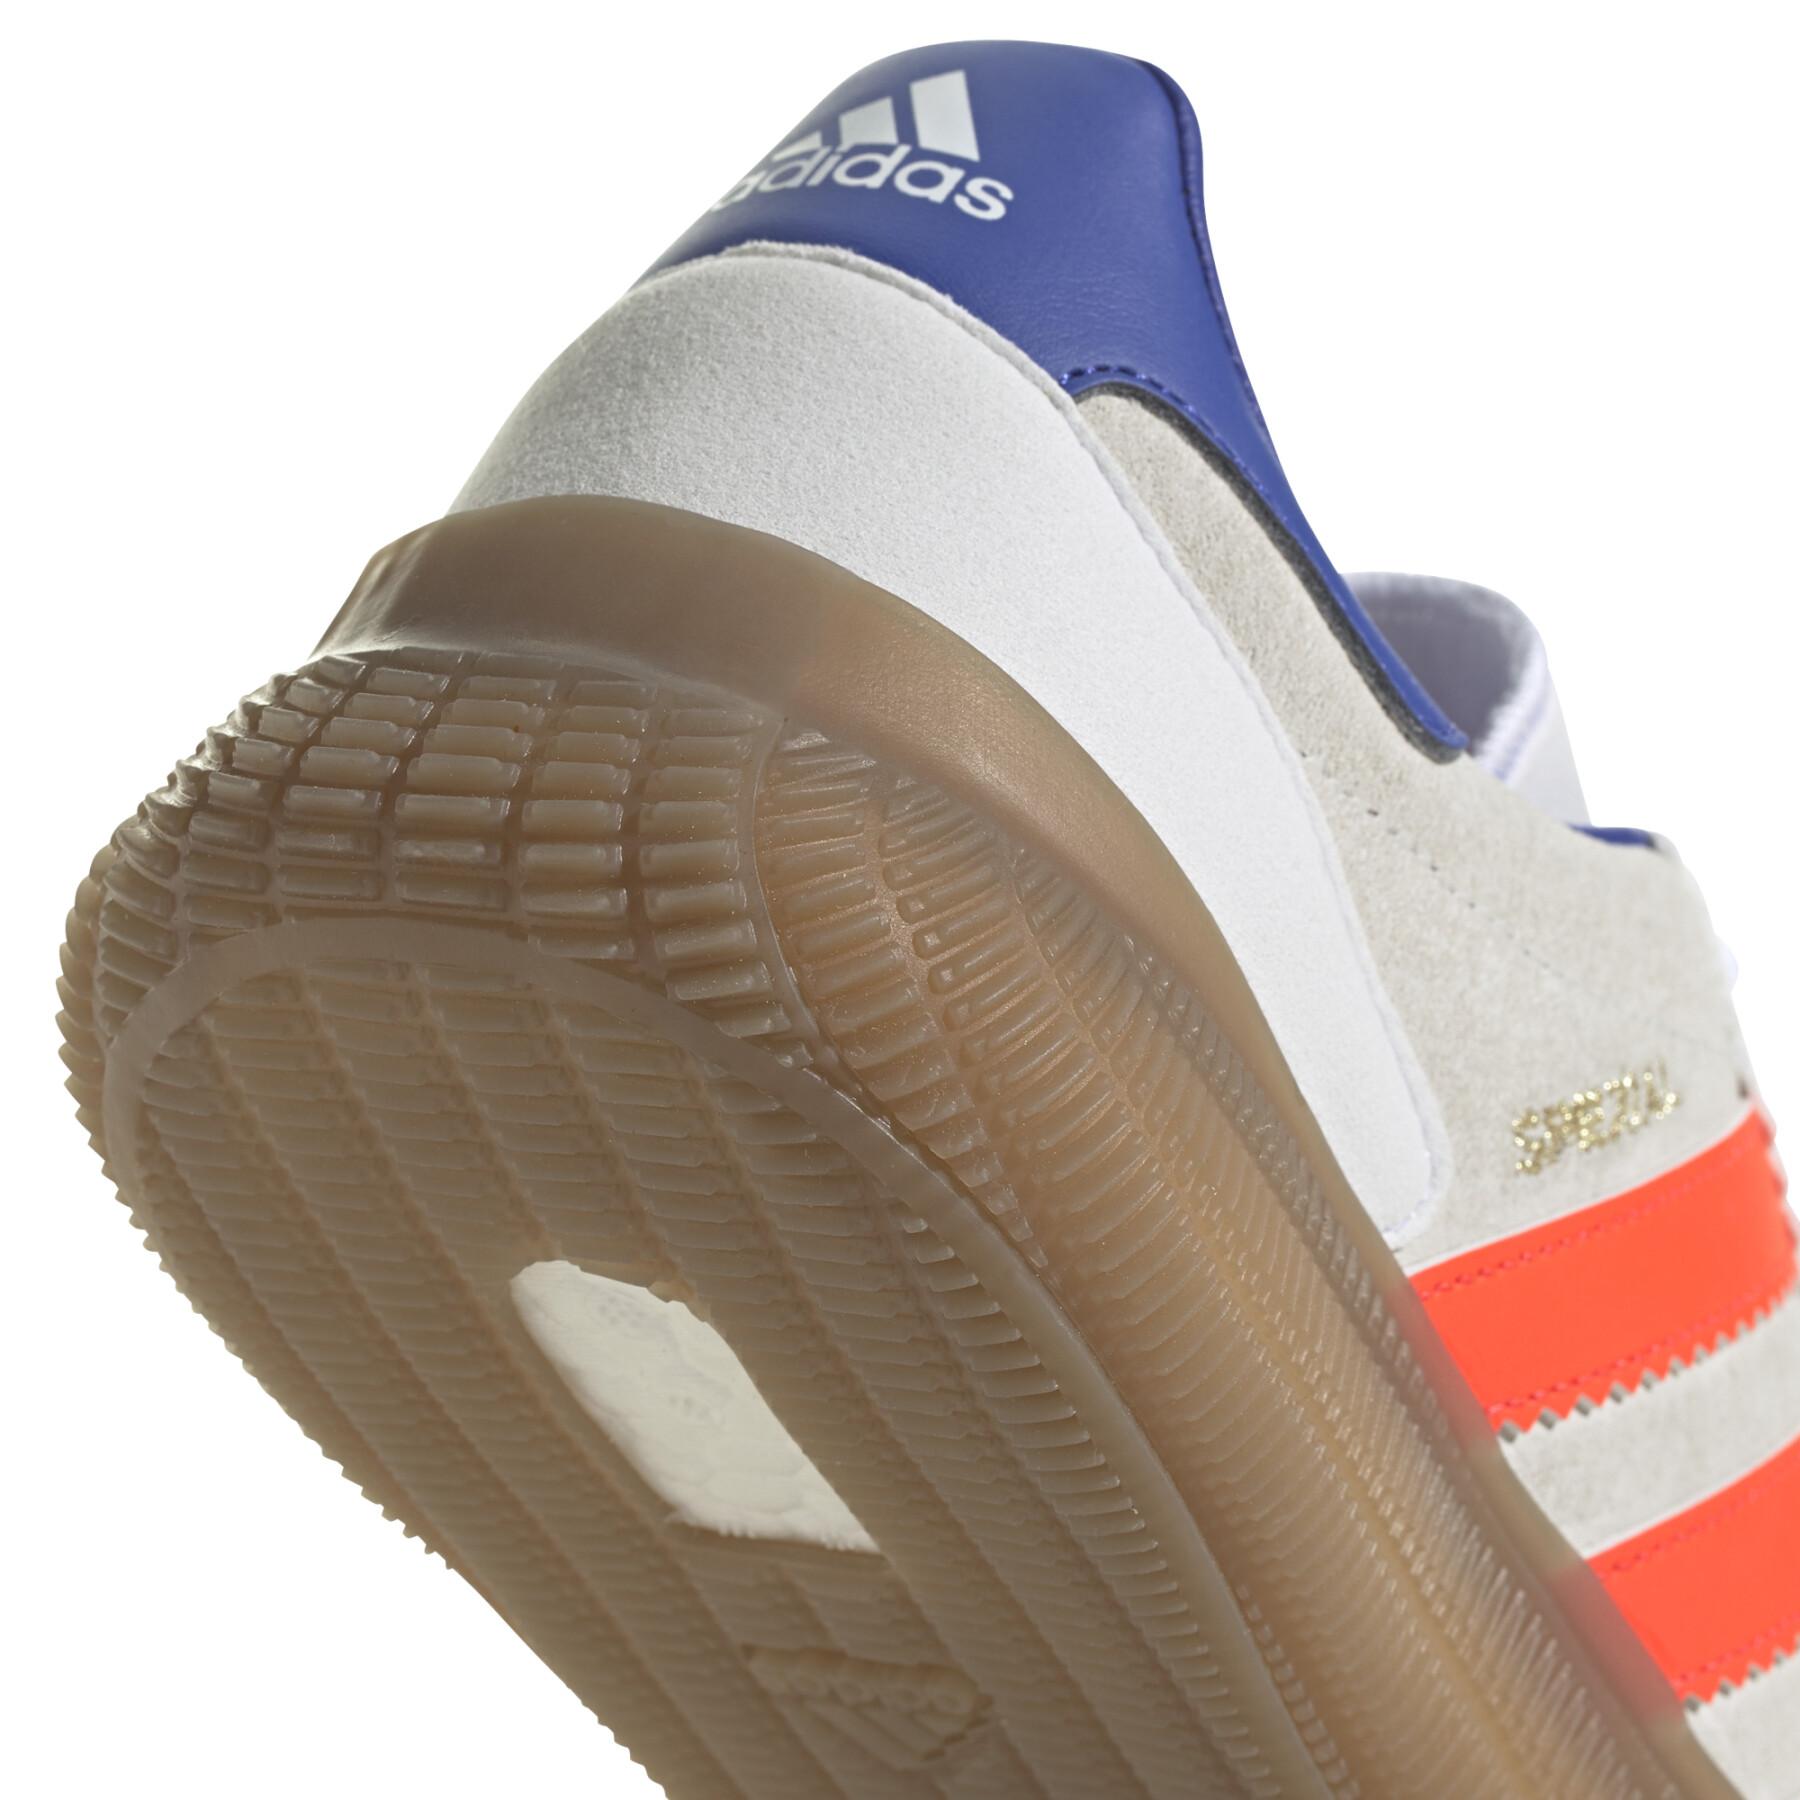 Handball shoes adidas HB Spezial Pro